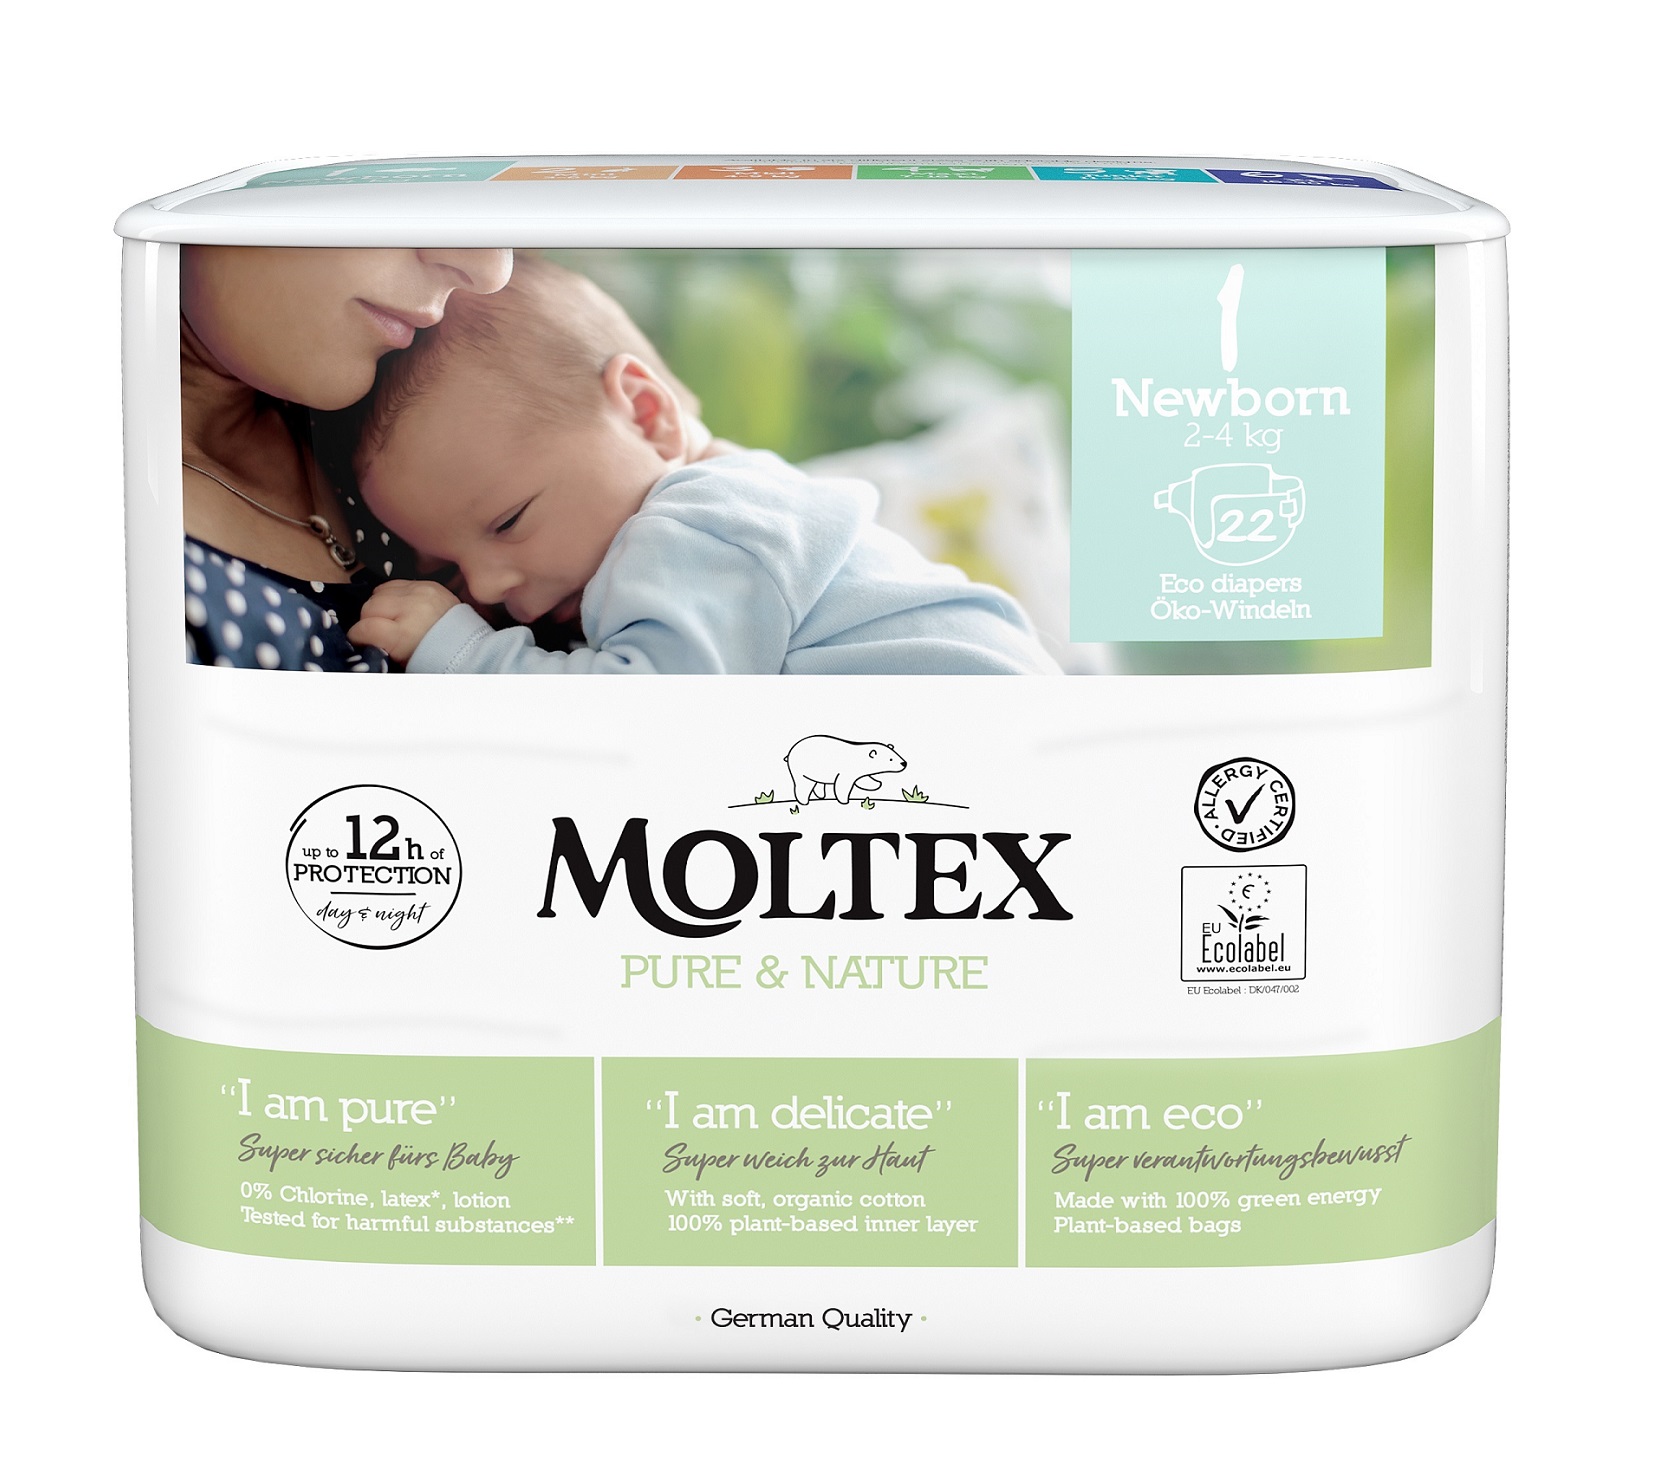 Moltex Pure & Nature Plenky Moltex Pure & Nature Newborn 2-4 kg (22 ks) + 2 mesiace na vrátenie tovaru